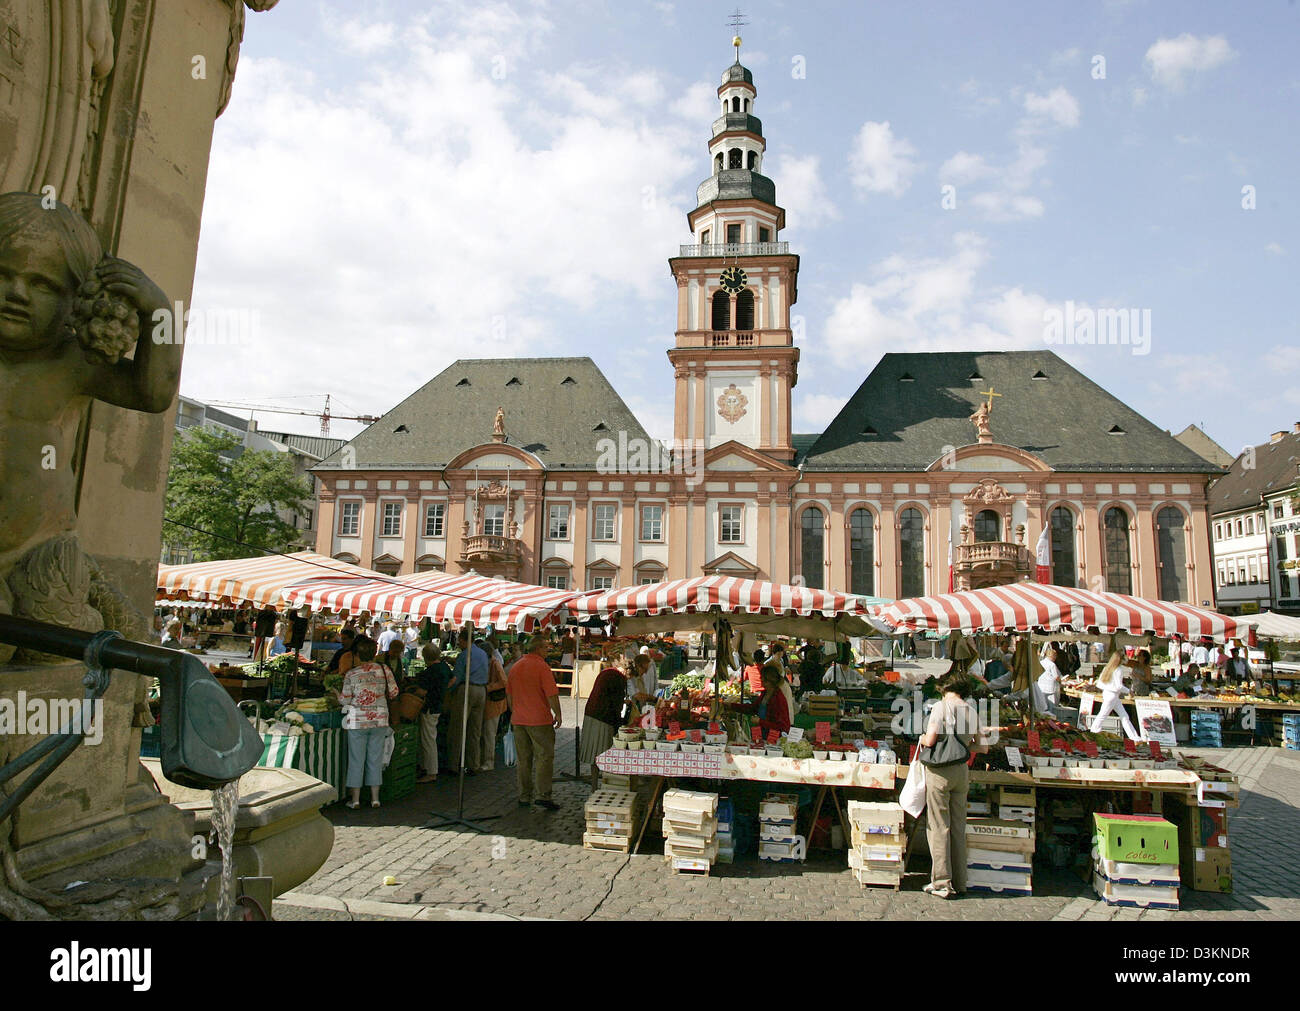 (Dpa) - l'immagine mostra la Piazza del Mercato nel centro di Mannheim, Germania, 21 luglio 2005. Foto: Ronald Wittek Foto Stock